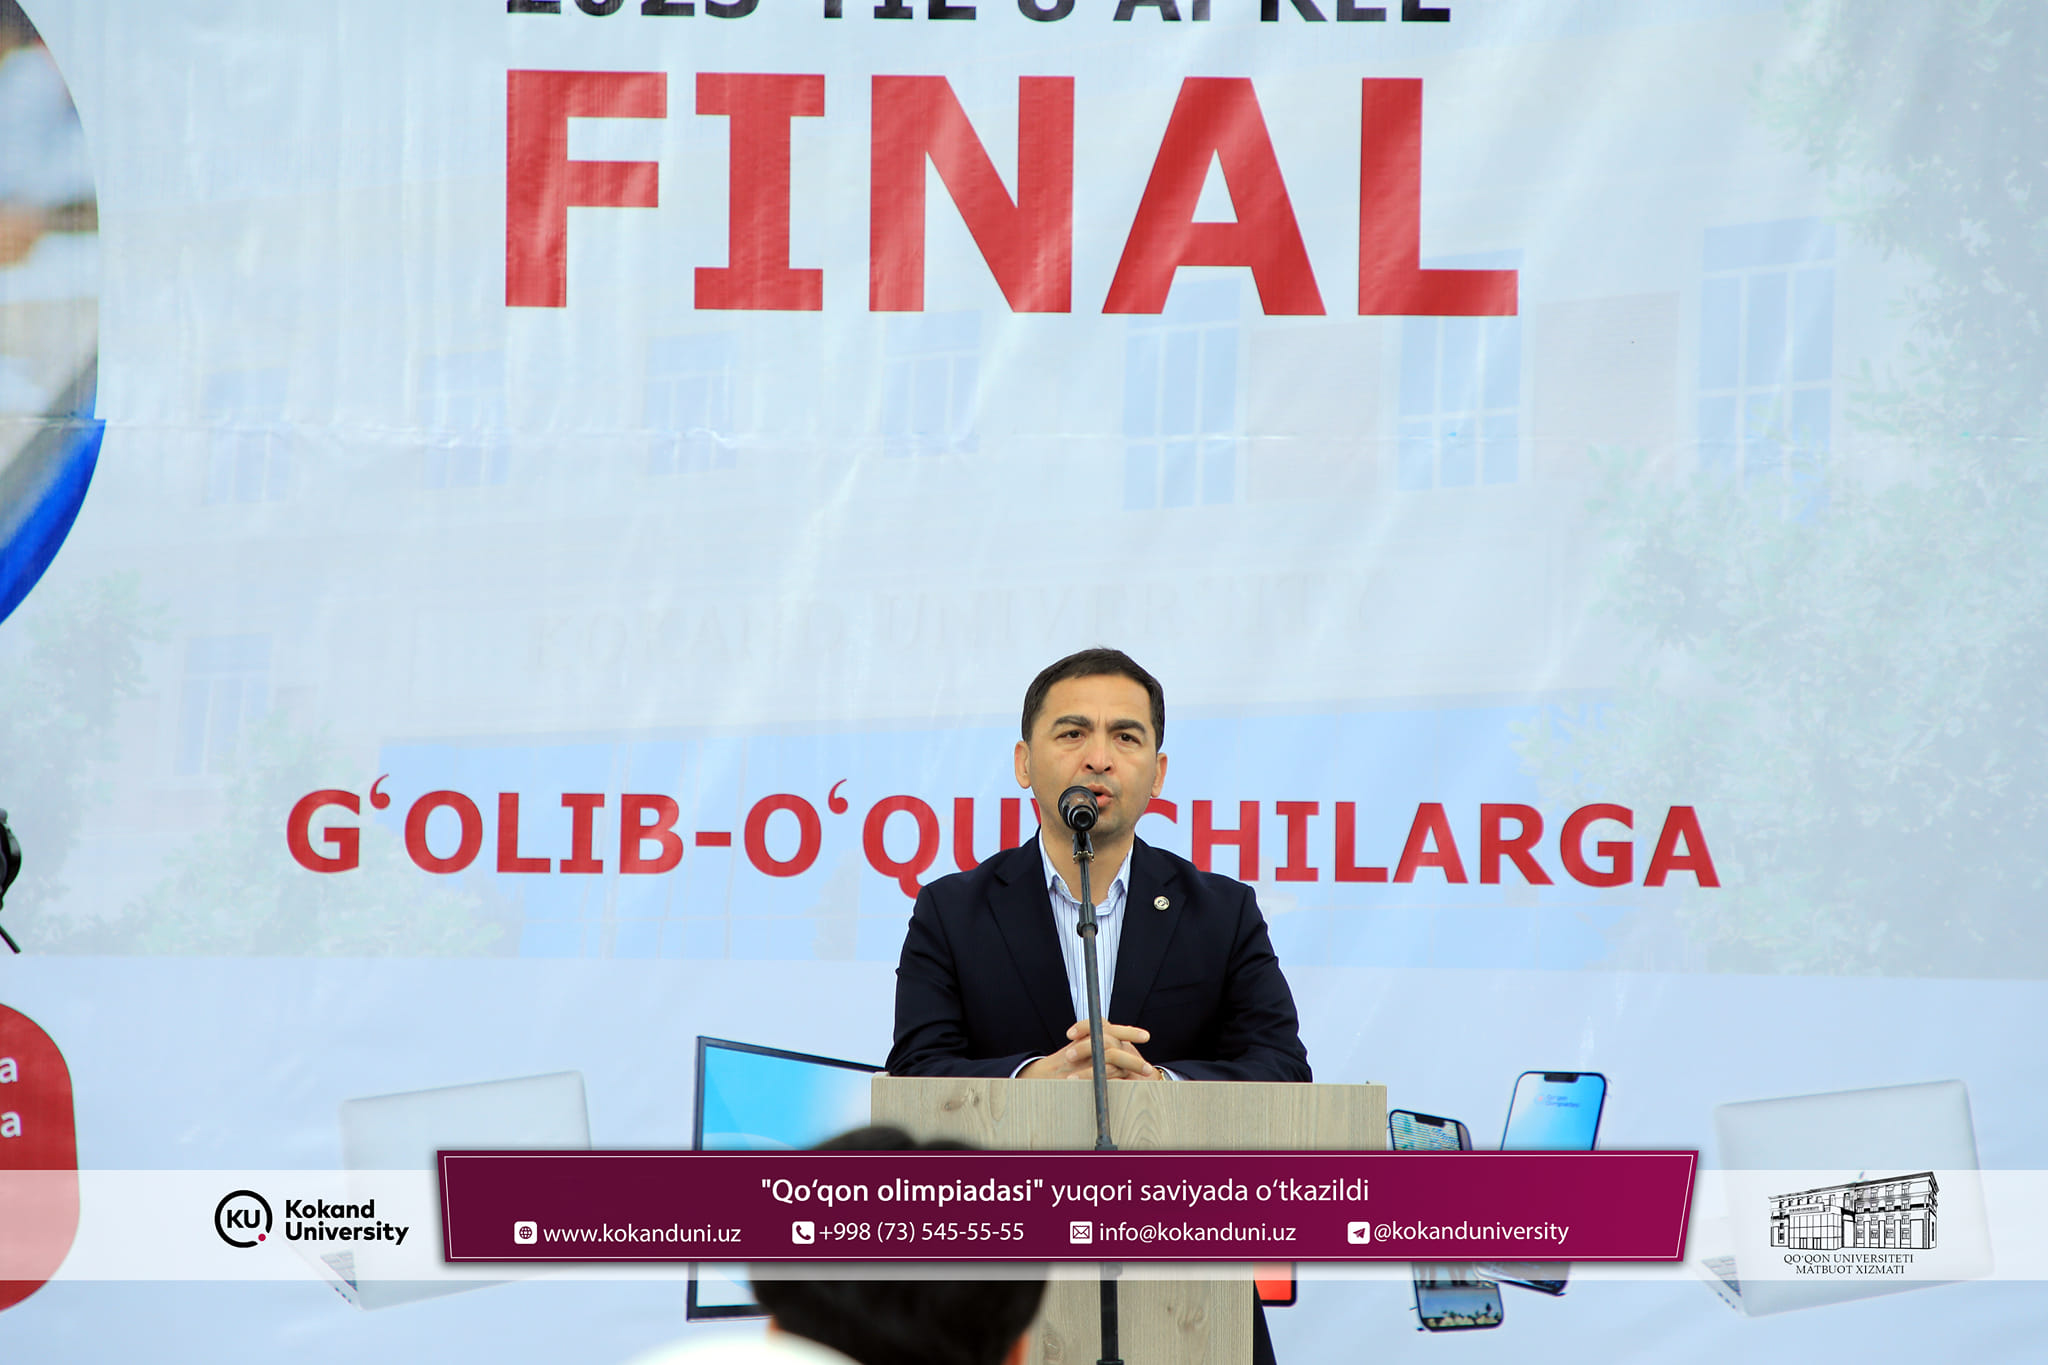 ​​Qo‘qon olimpiadasining FINAL bosqichi natijalari aniqlandi